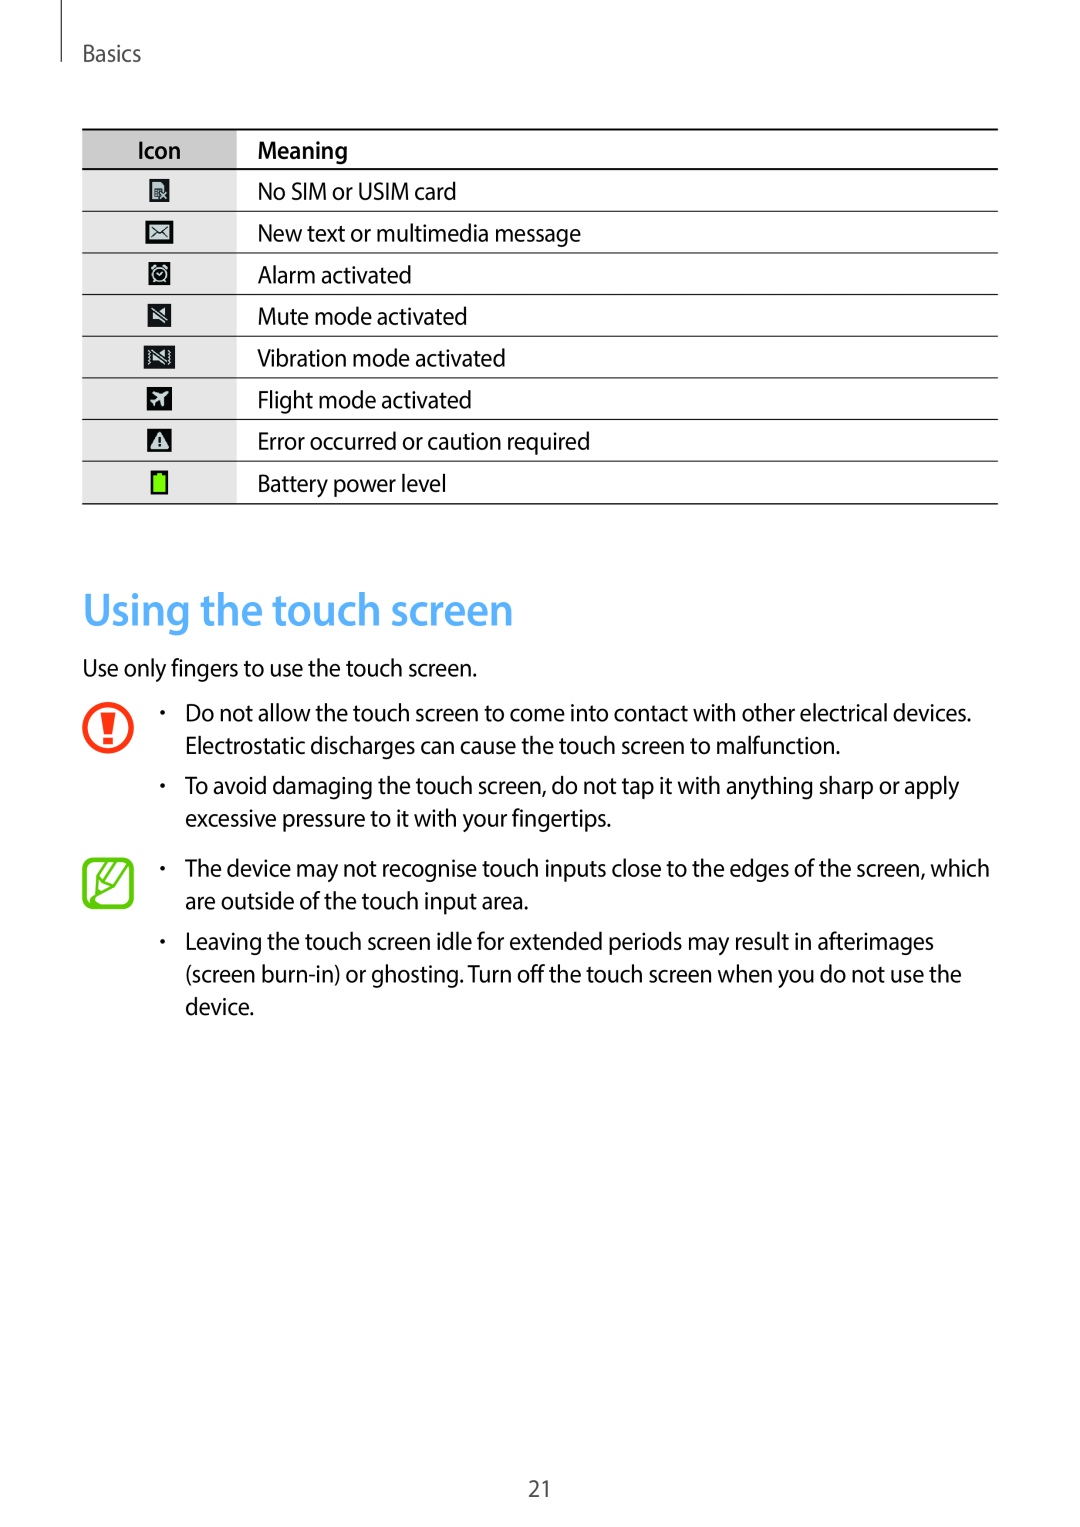 Samsung SM-G7105ZWAAMO, SM-G7105ZKAATO, SM-G7105ZWAATO, SM-G7105ZKATUR manual Using the touch screen, Basics, Icon Meaning 